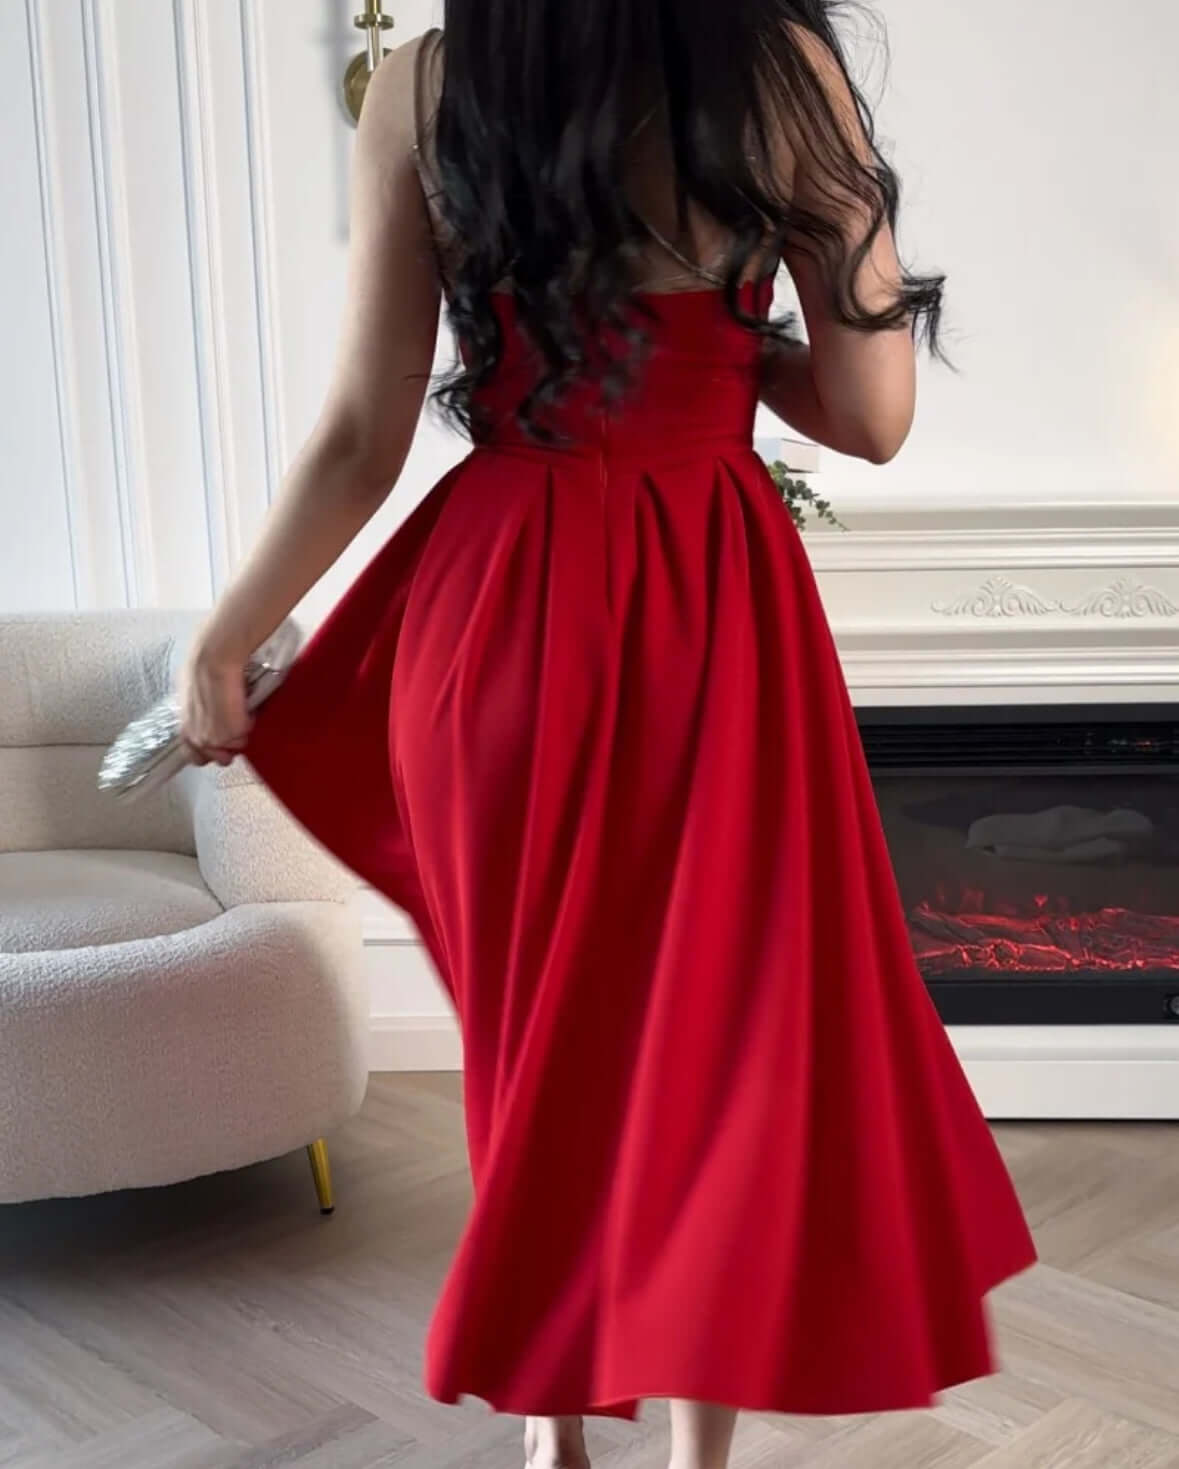 فستان كريب مع اكسسوار احمر